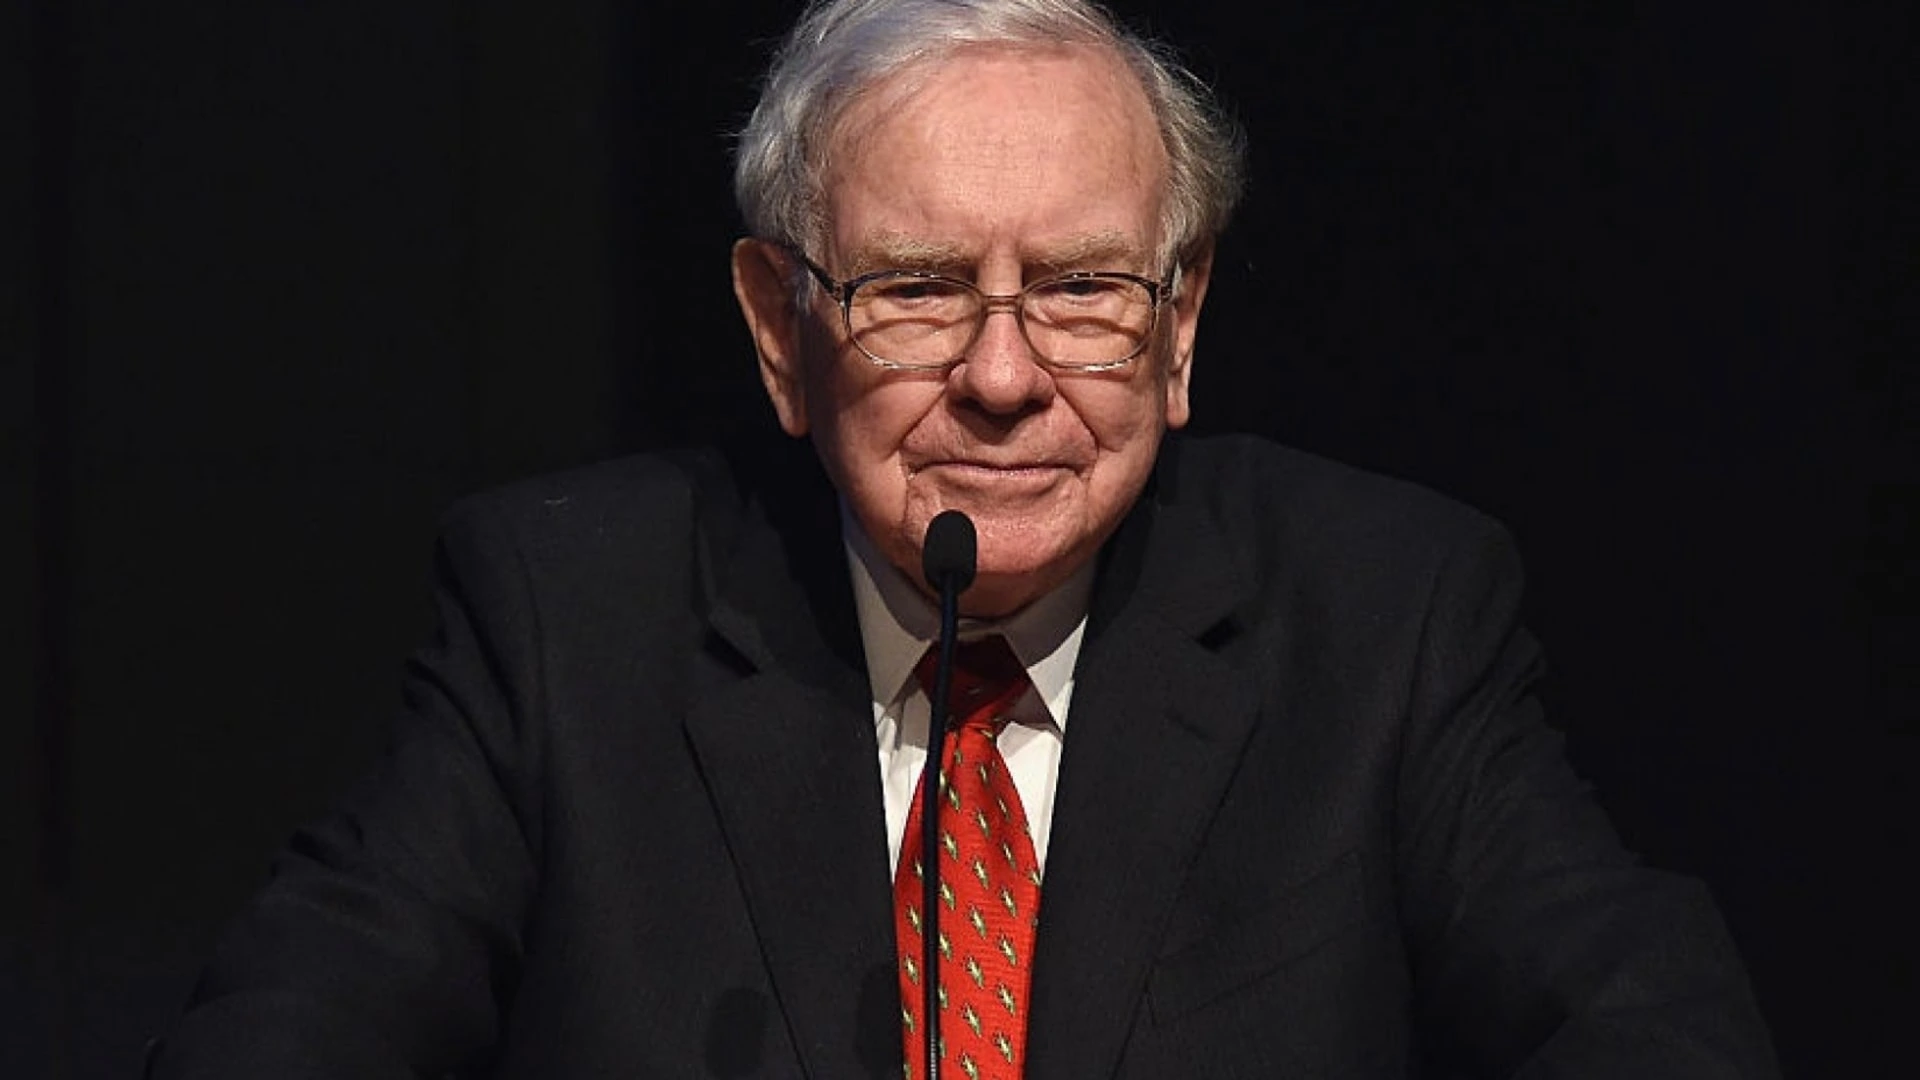 Warren Buffett - 控股公司 Berkshire Hathawaysource 的董事长 https://www.inc.com/bill-murphy-jr/37-years-ago-warren-buffett-explained-a-brutal-truth-that-most-people-从不学习.html